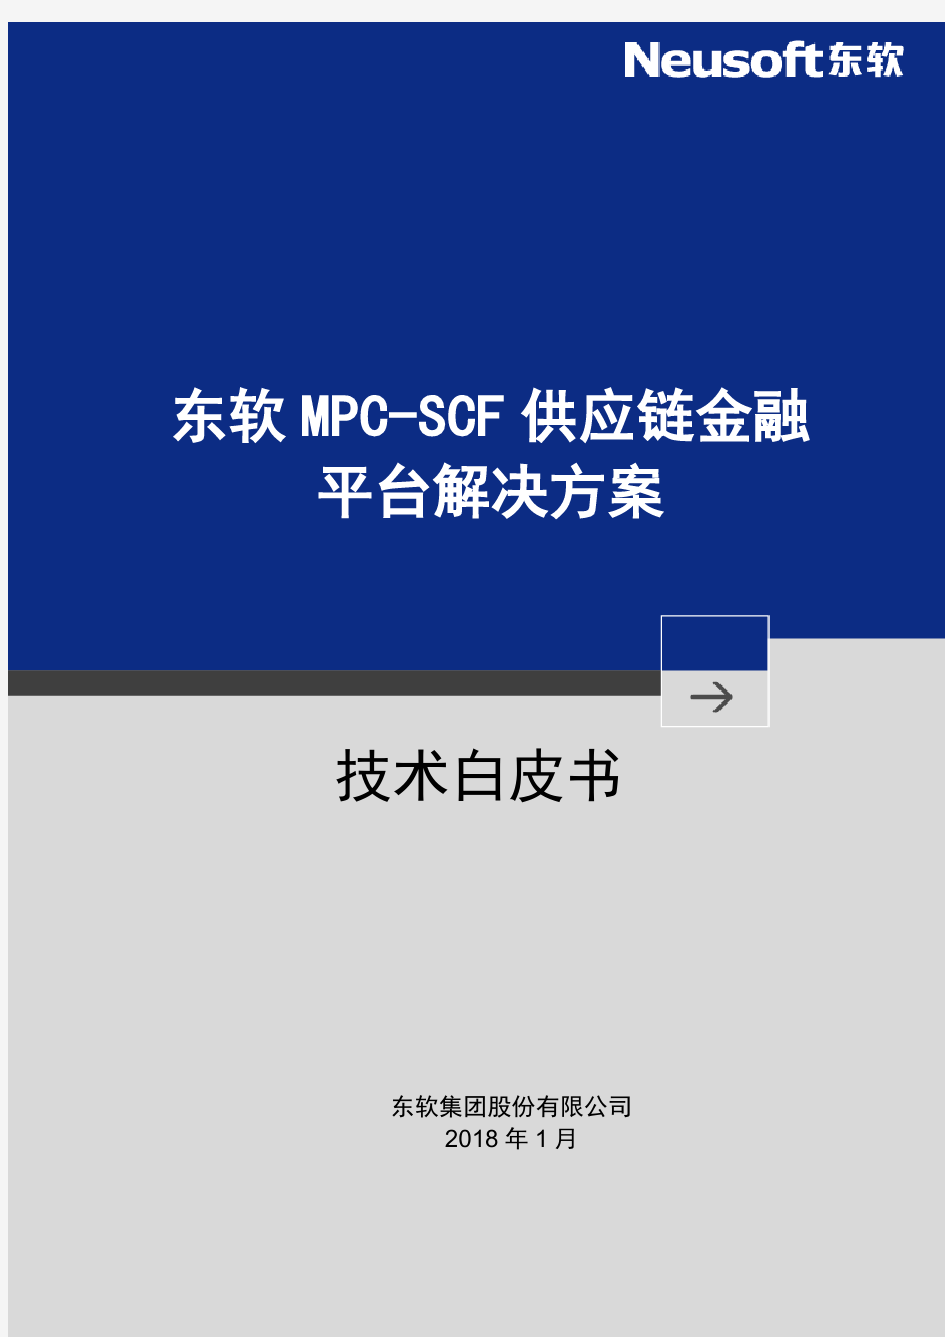 东软MPC-SCF供应链金融解决方案白皮书